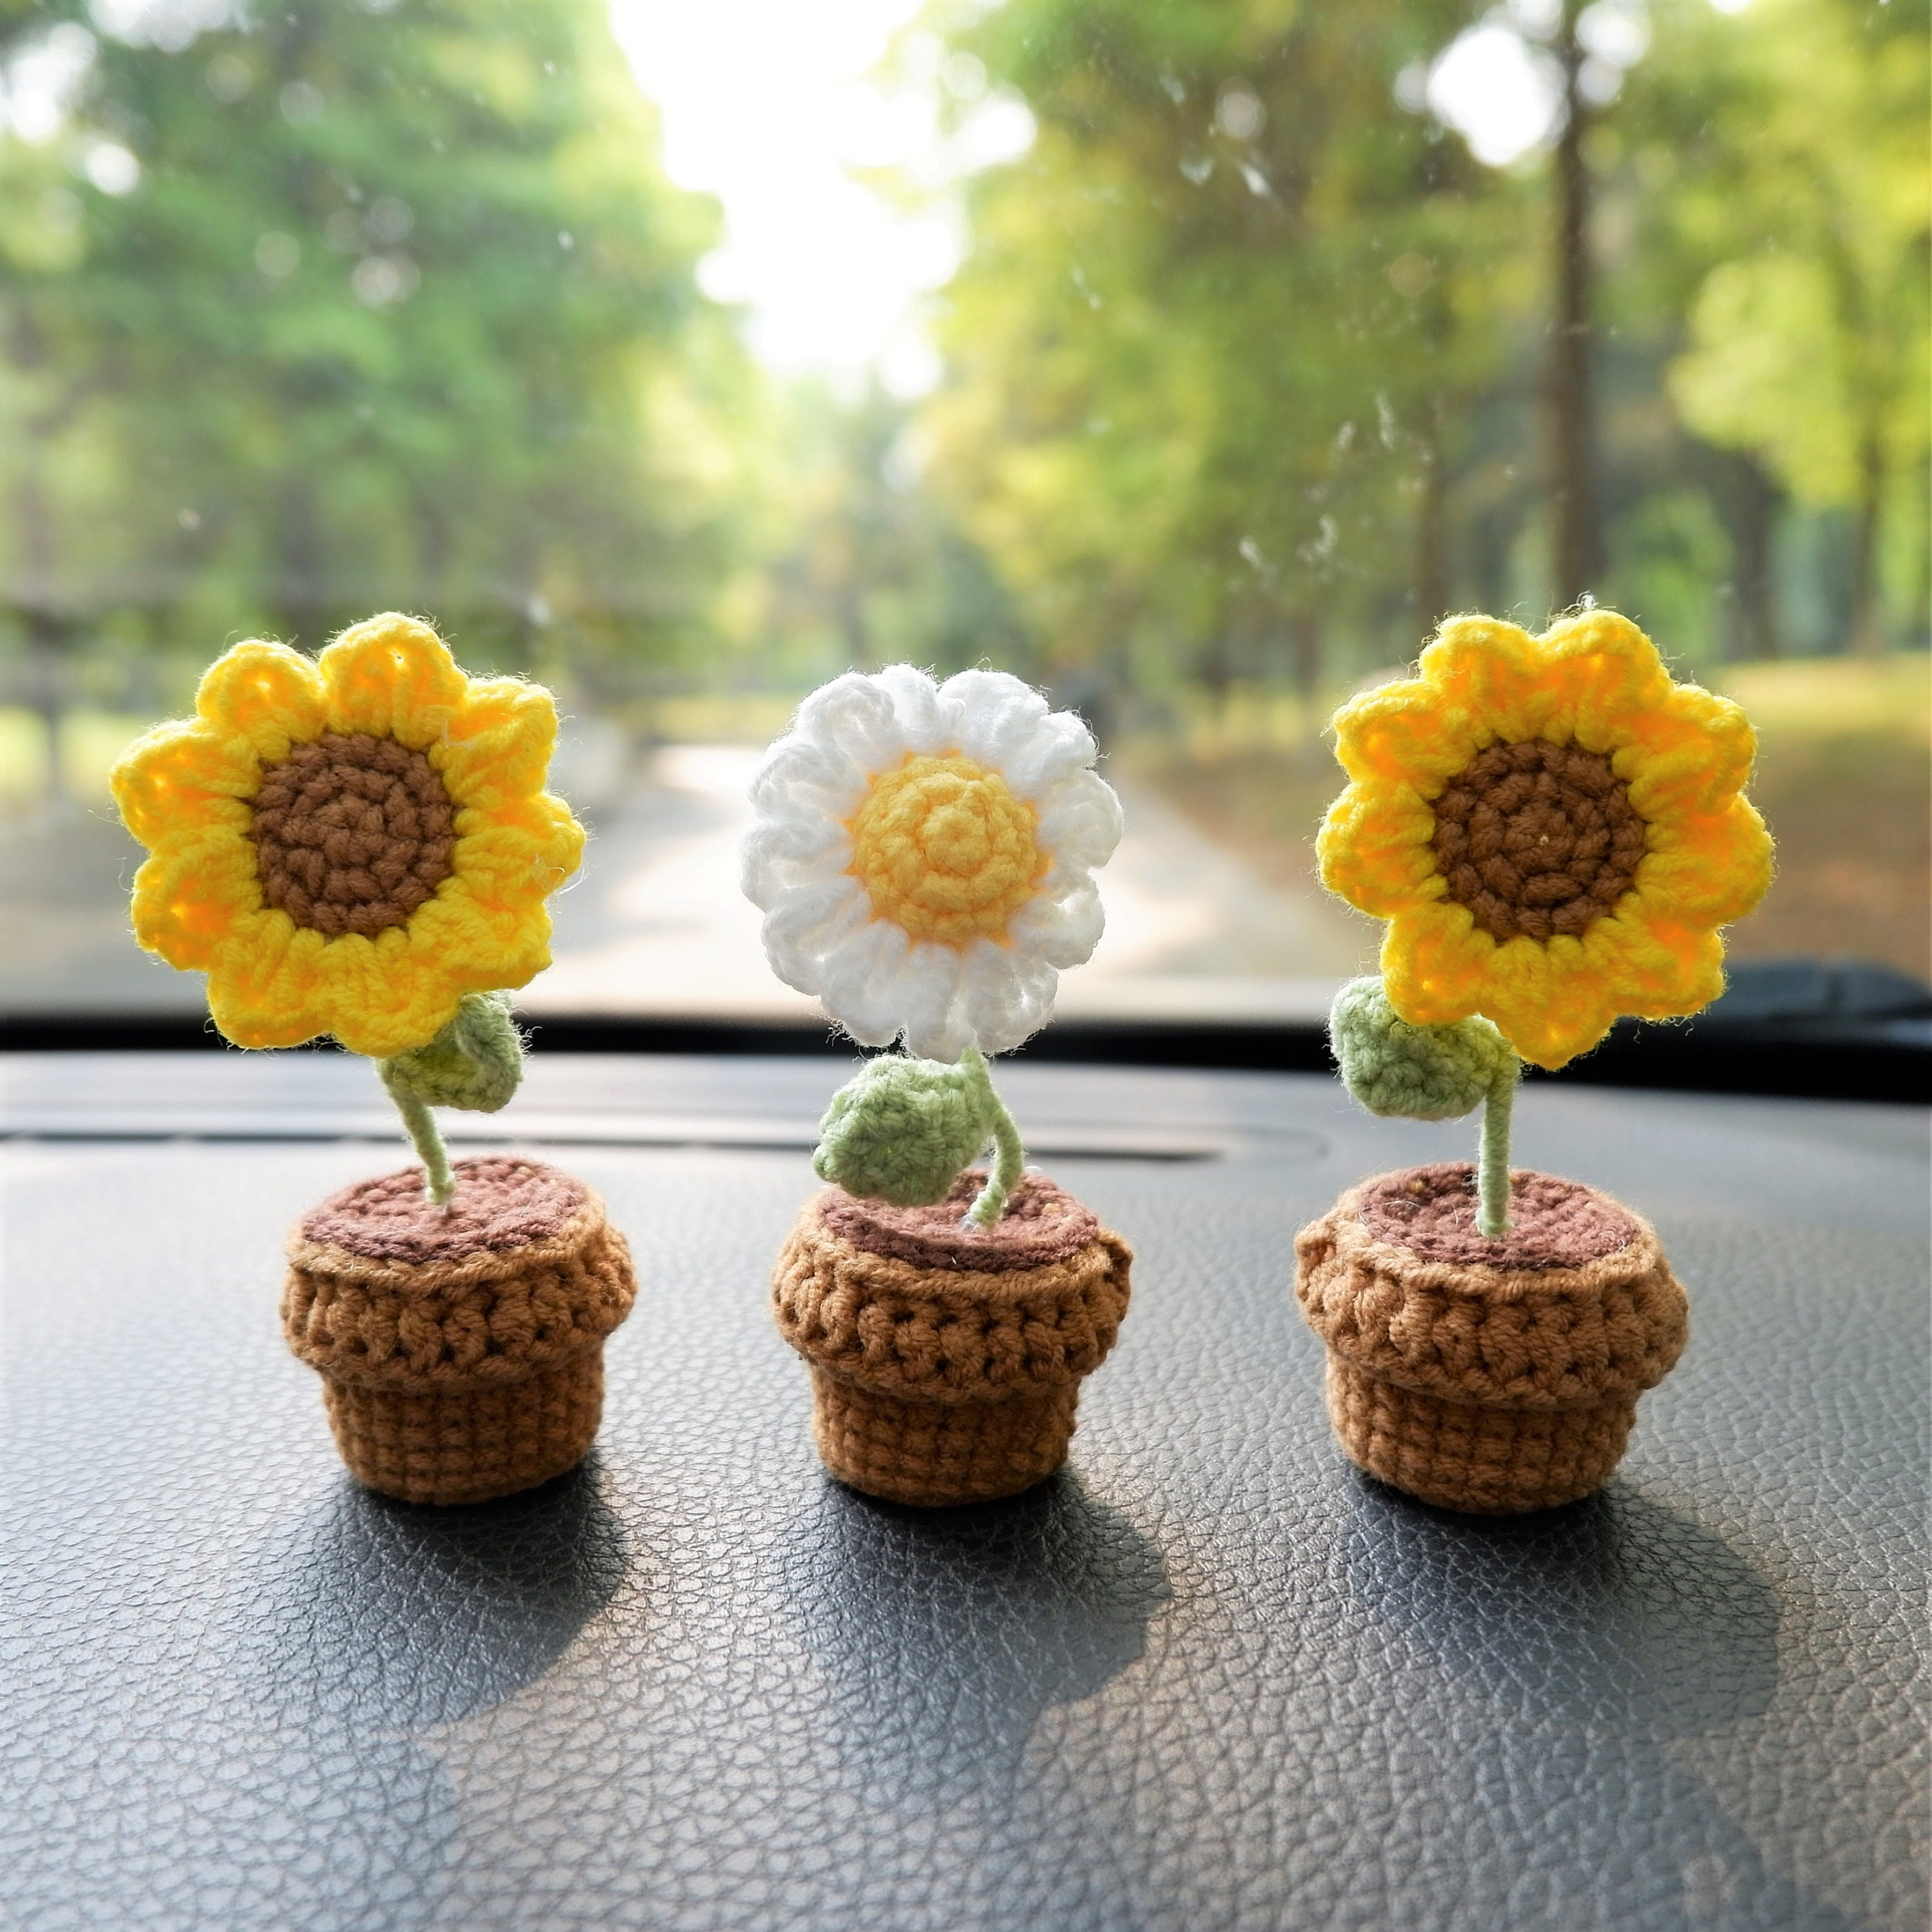 3 Stück / 2 Stück Mini Sonnenblumen / Gänseblümchen Blumen